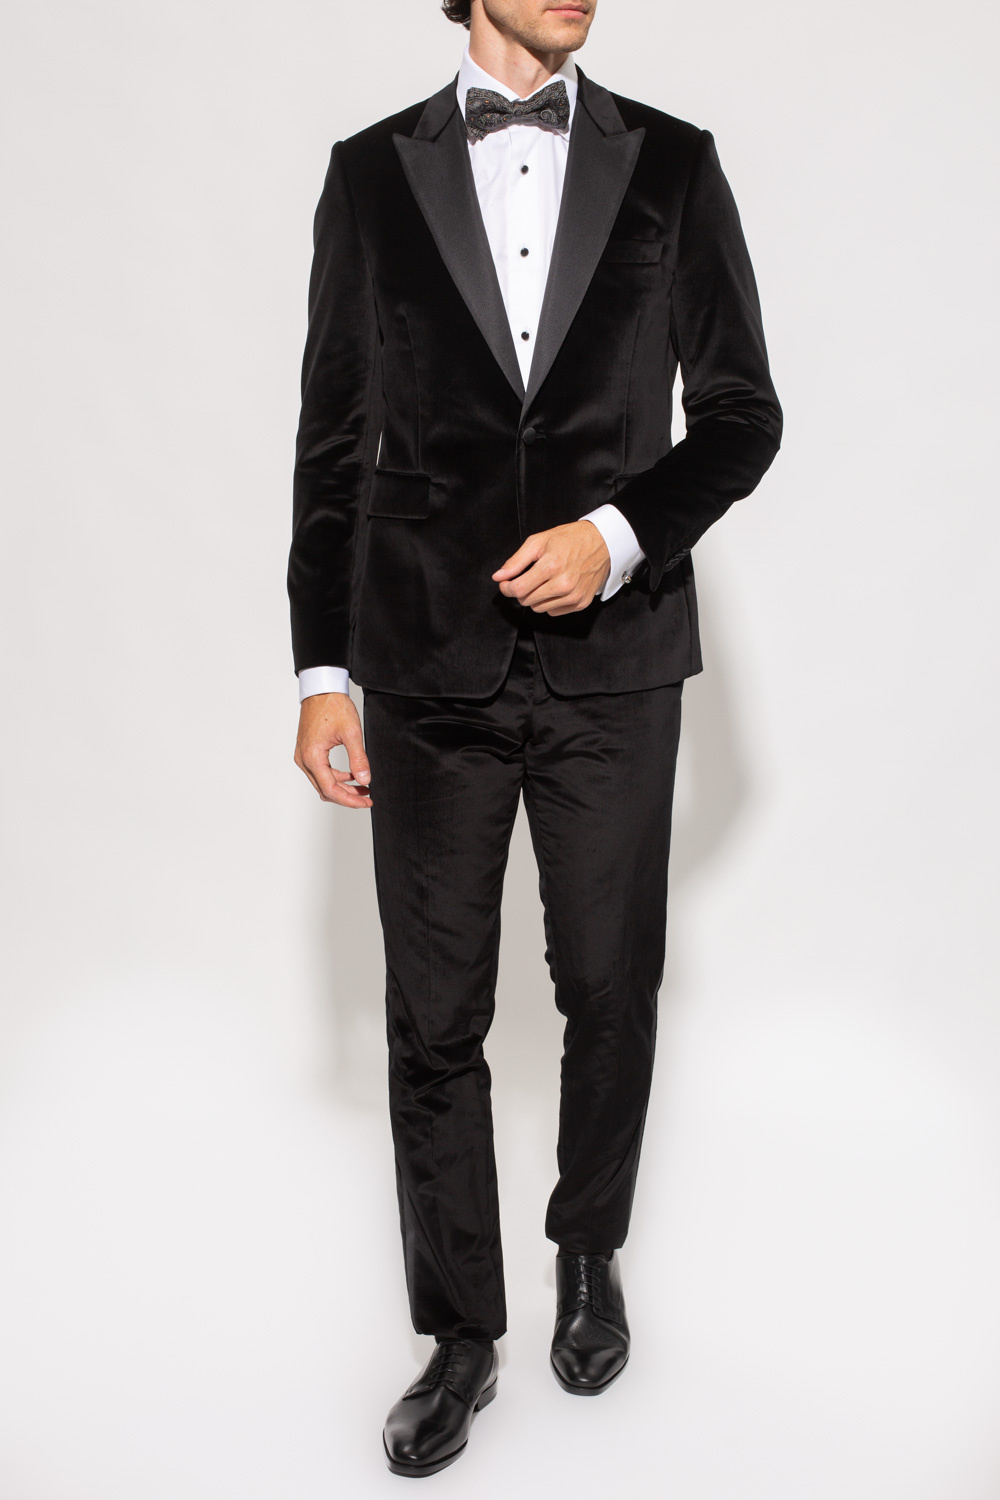 Paul Smith Velvet suit | Men's Clothing | Vitkac